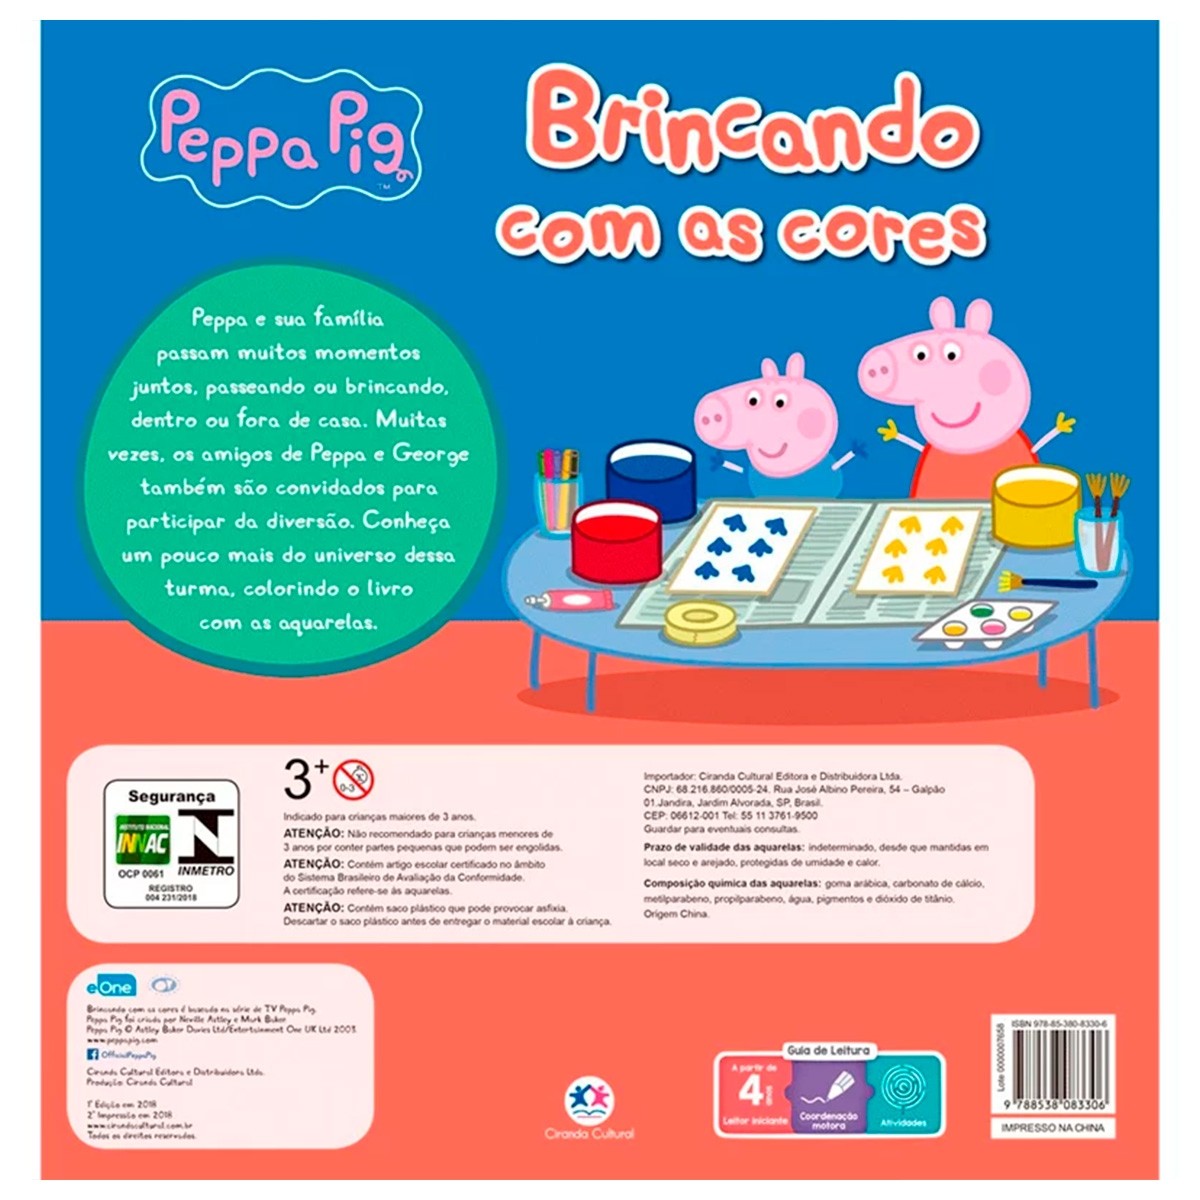 20 Desenhos da Peppa Pig para Colorir e Imprimir - Online Cursos Gratuitos